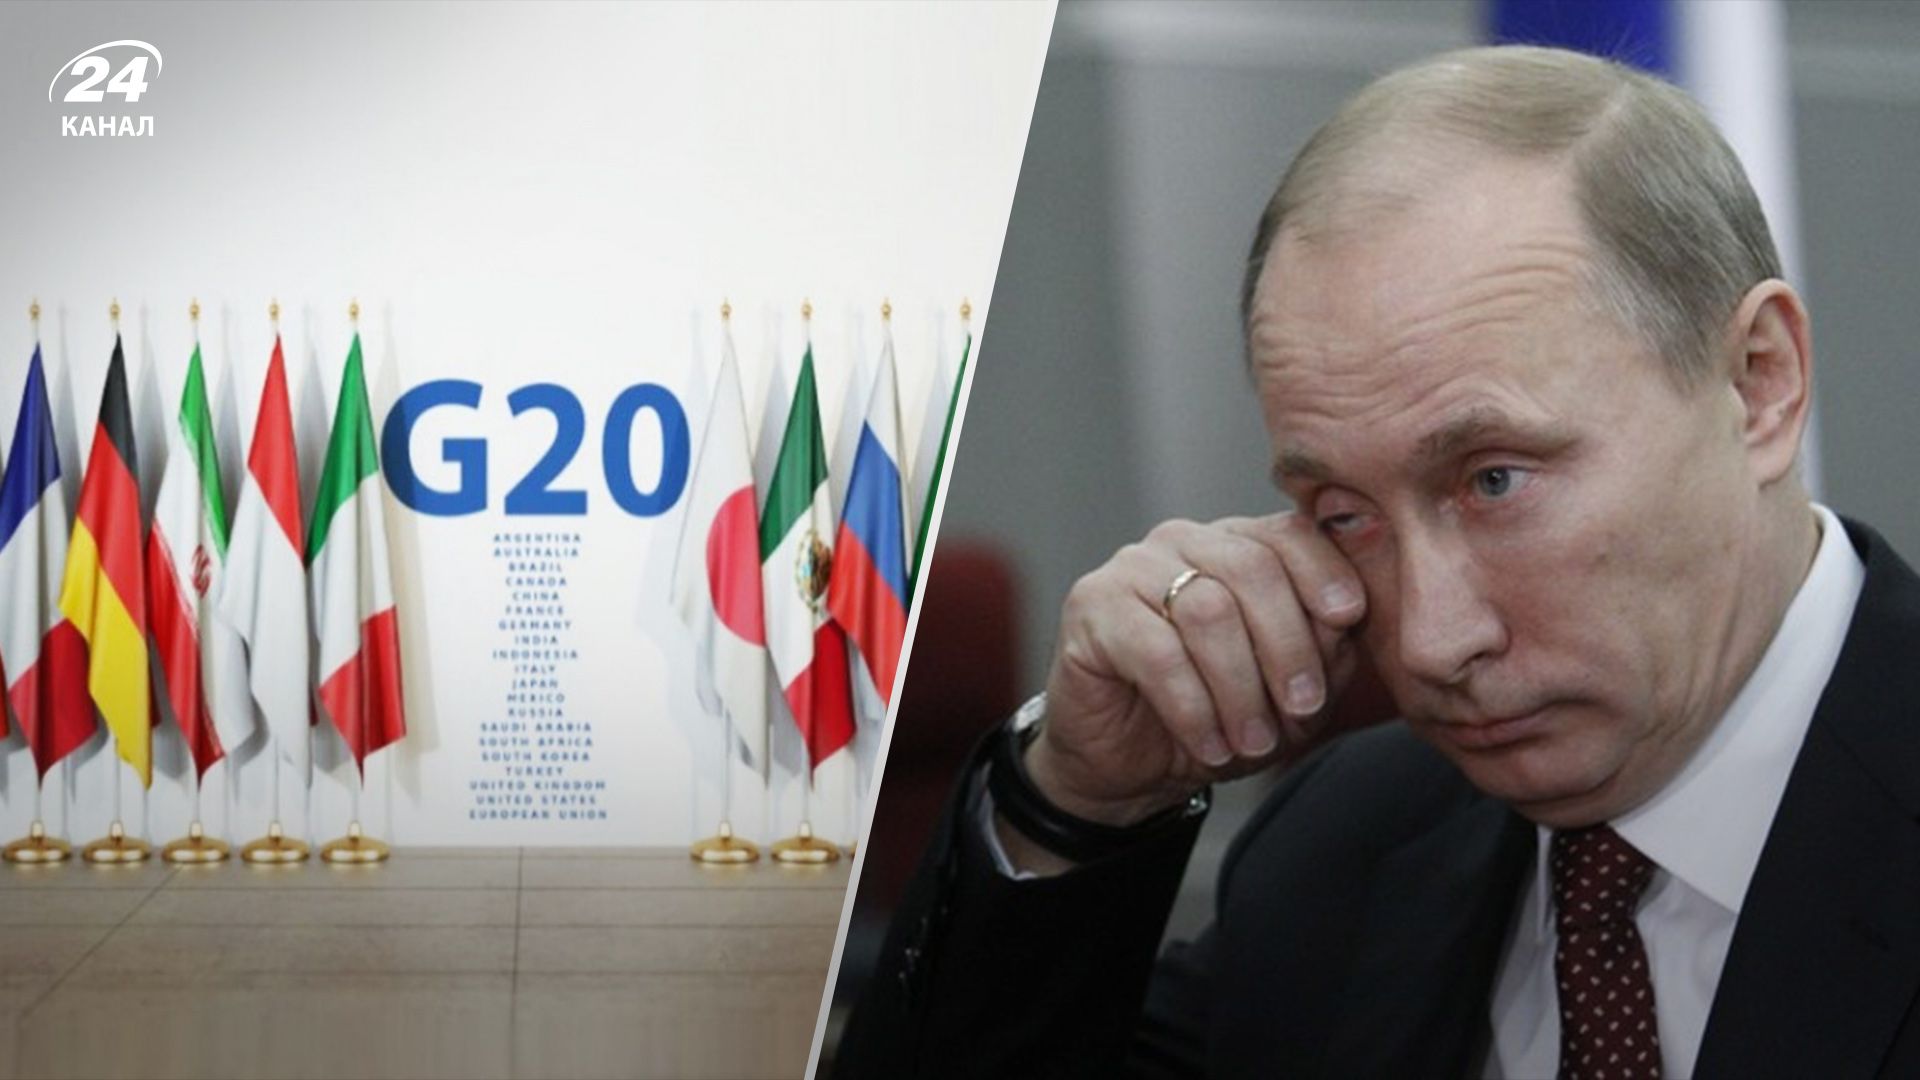 Рішуче засуджуємо російську агресію, – лідери G20 оприлюднили декларацію щодо війни в Україні - 24 Канал